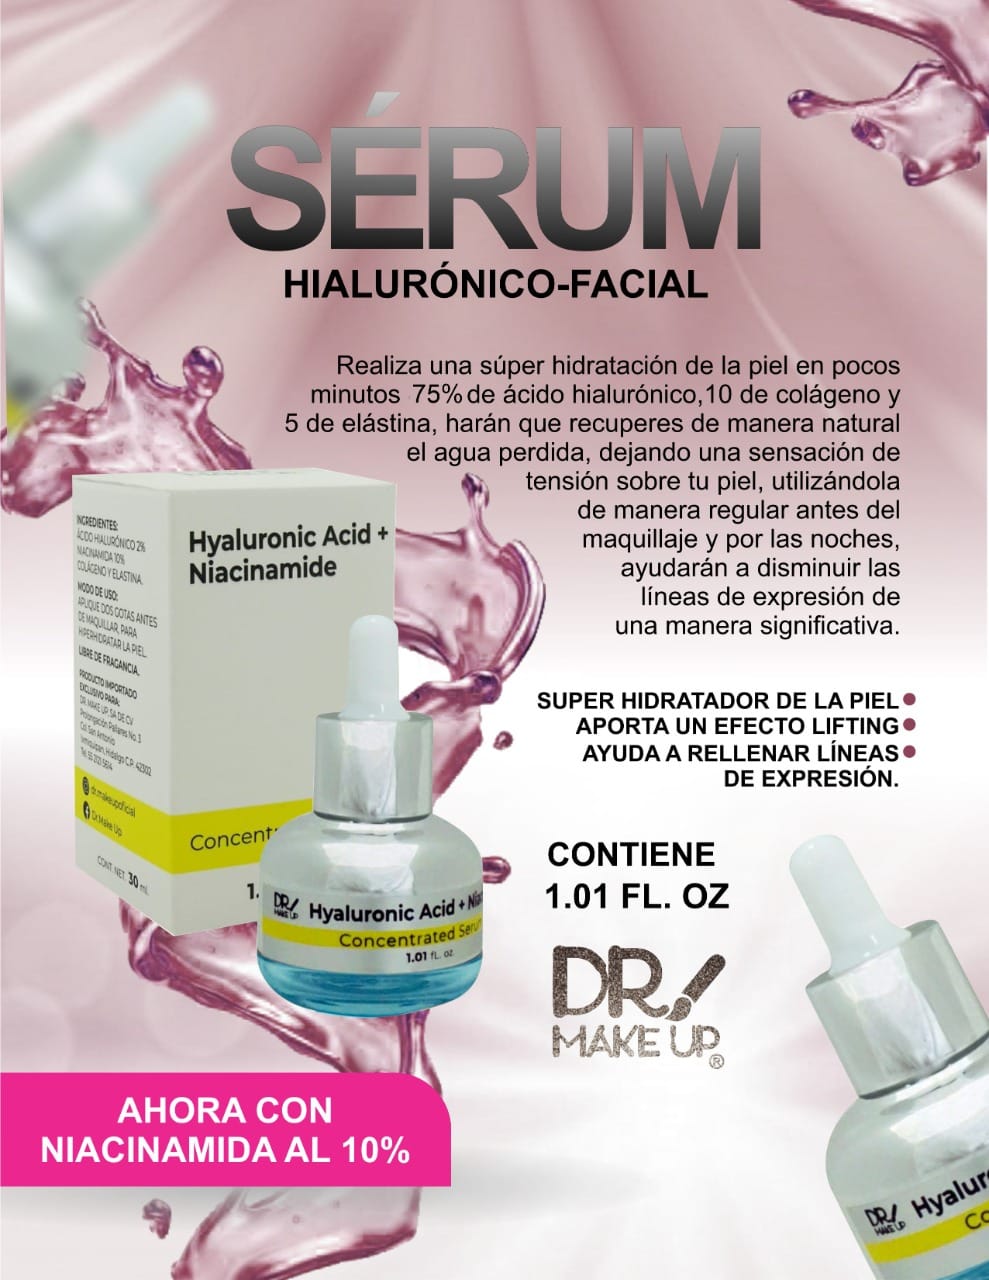 Serum Hyaluronic Acid + Niacinamide - DR MAKEUP - Compra Maquillaje y Artículos de Belleza | Belle Queen Cosmetics